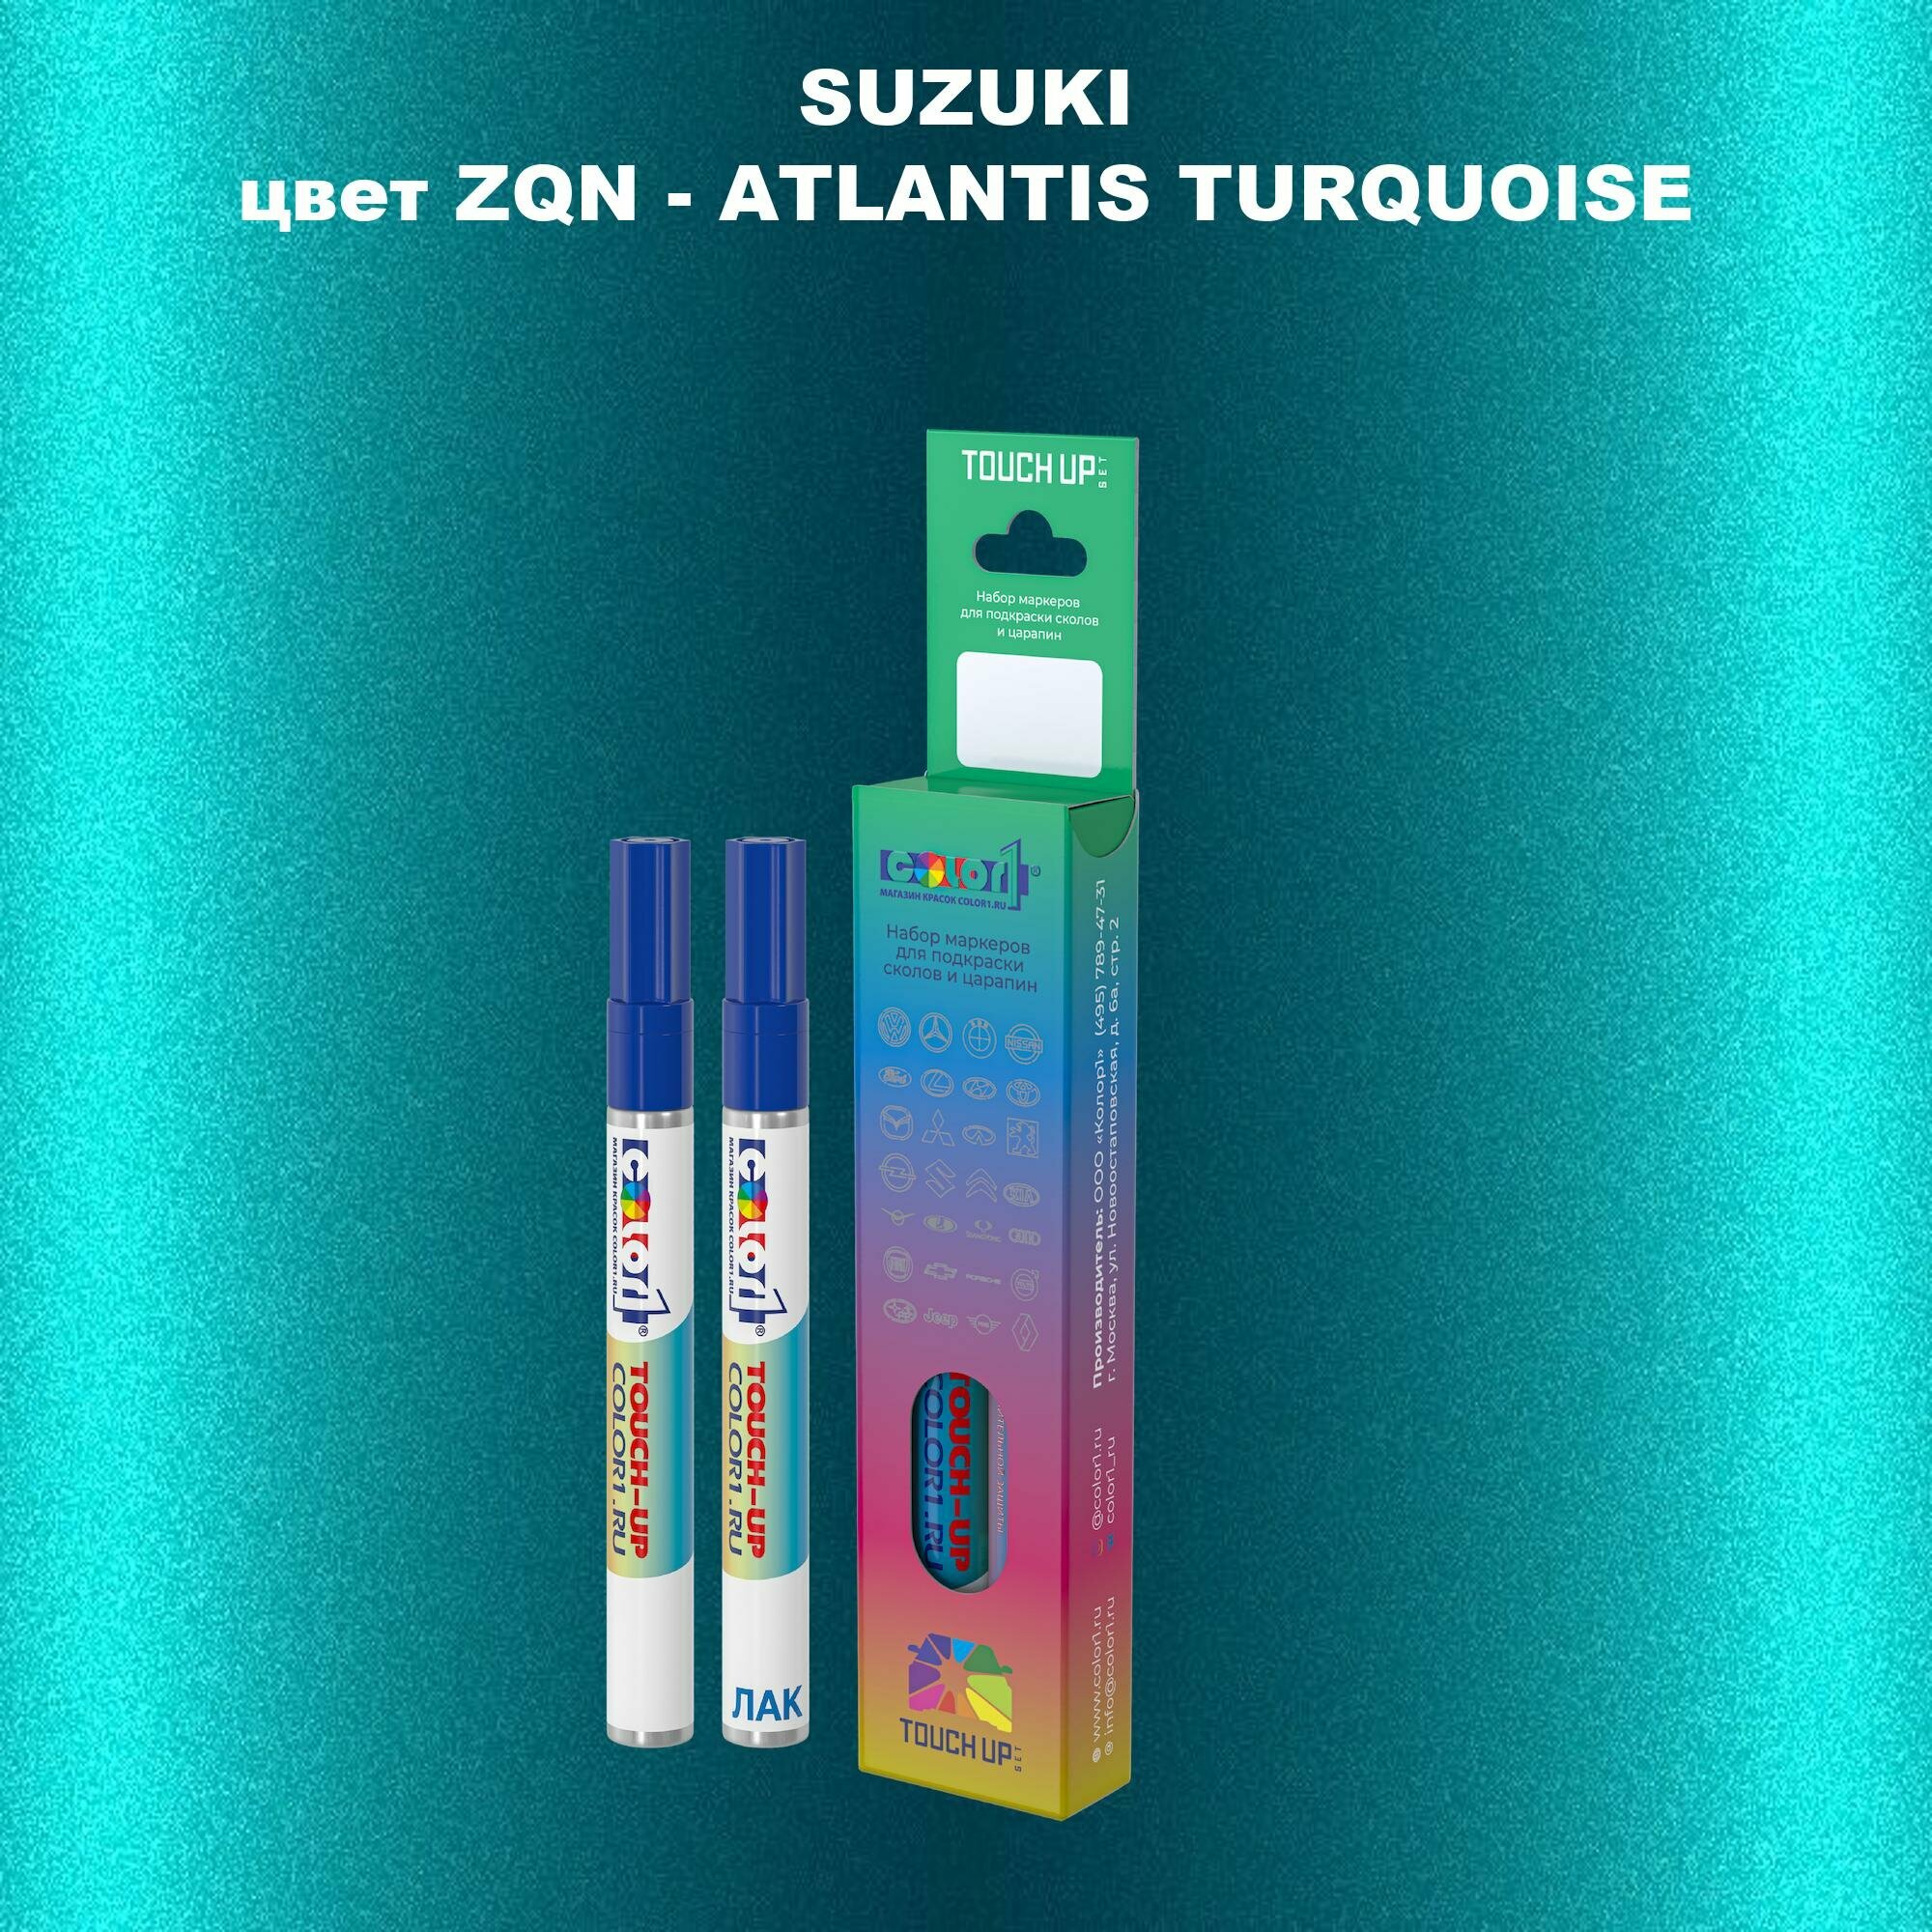 Маркер с краской COLOR1 для SUZUKI цвет ZQN - ATLANTIS TURQUOISE